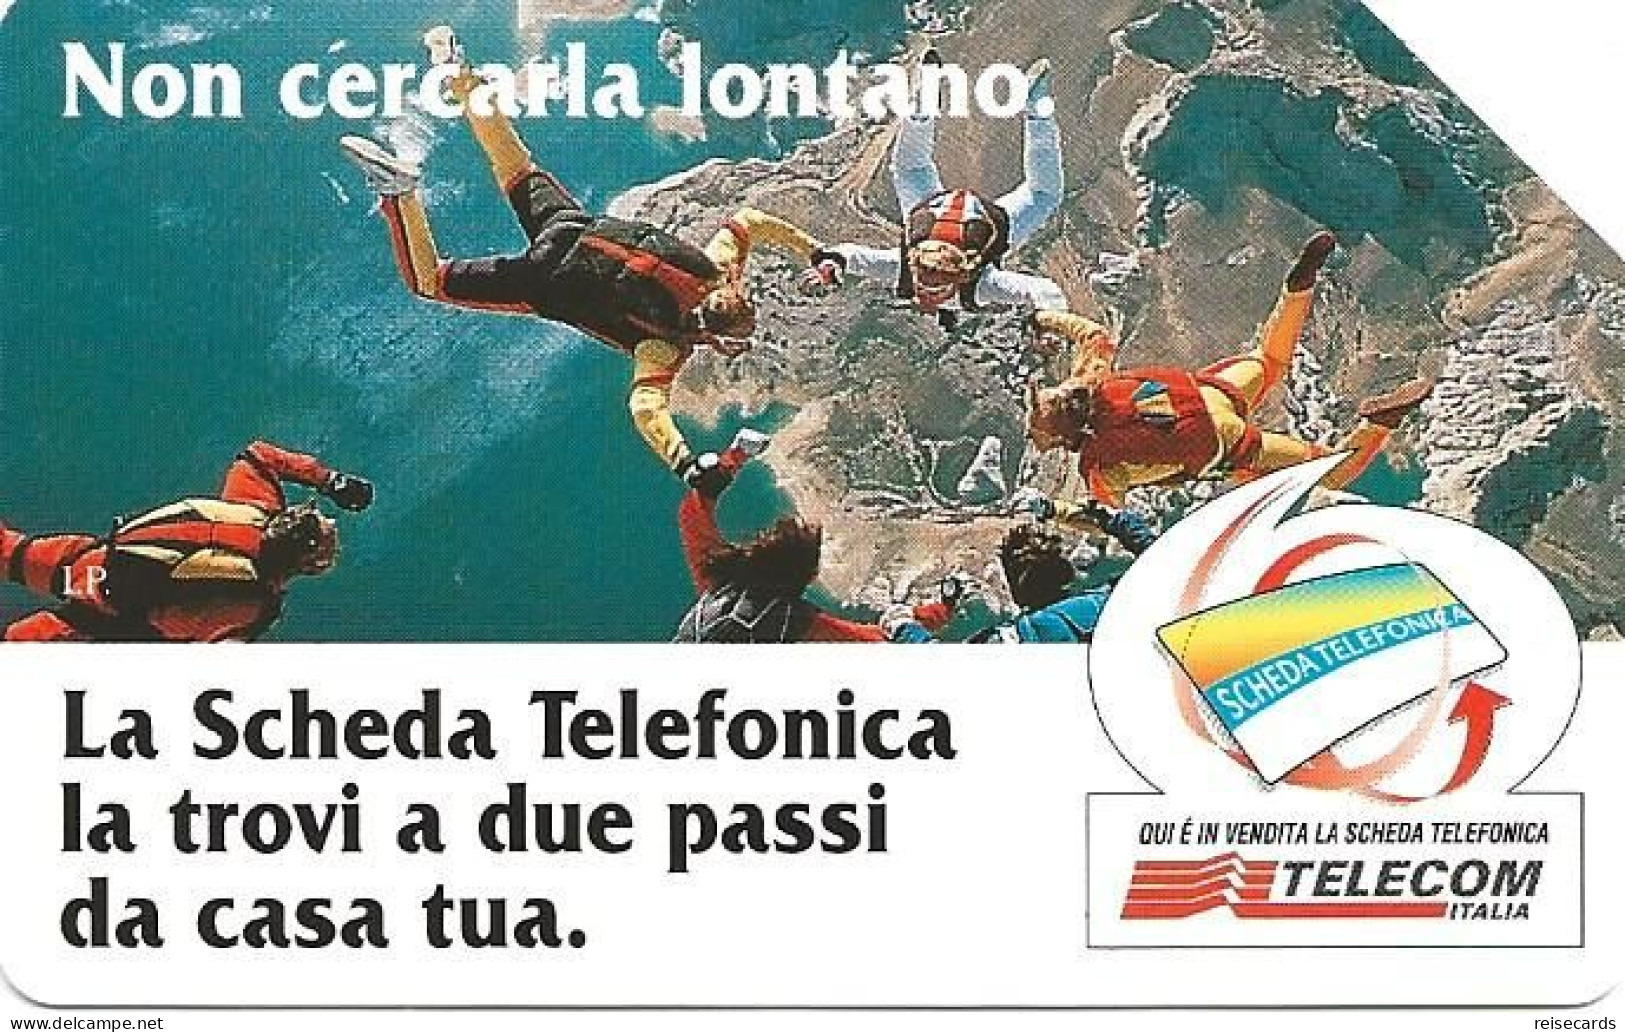 Italy: Telecom Italia - La Scheda Telefonica, Non Cercarla Lontano - Public Advertising